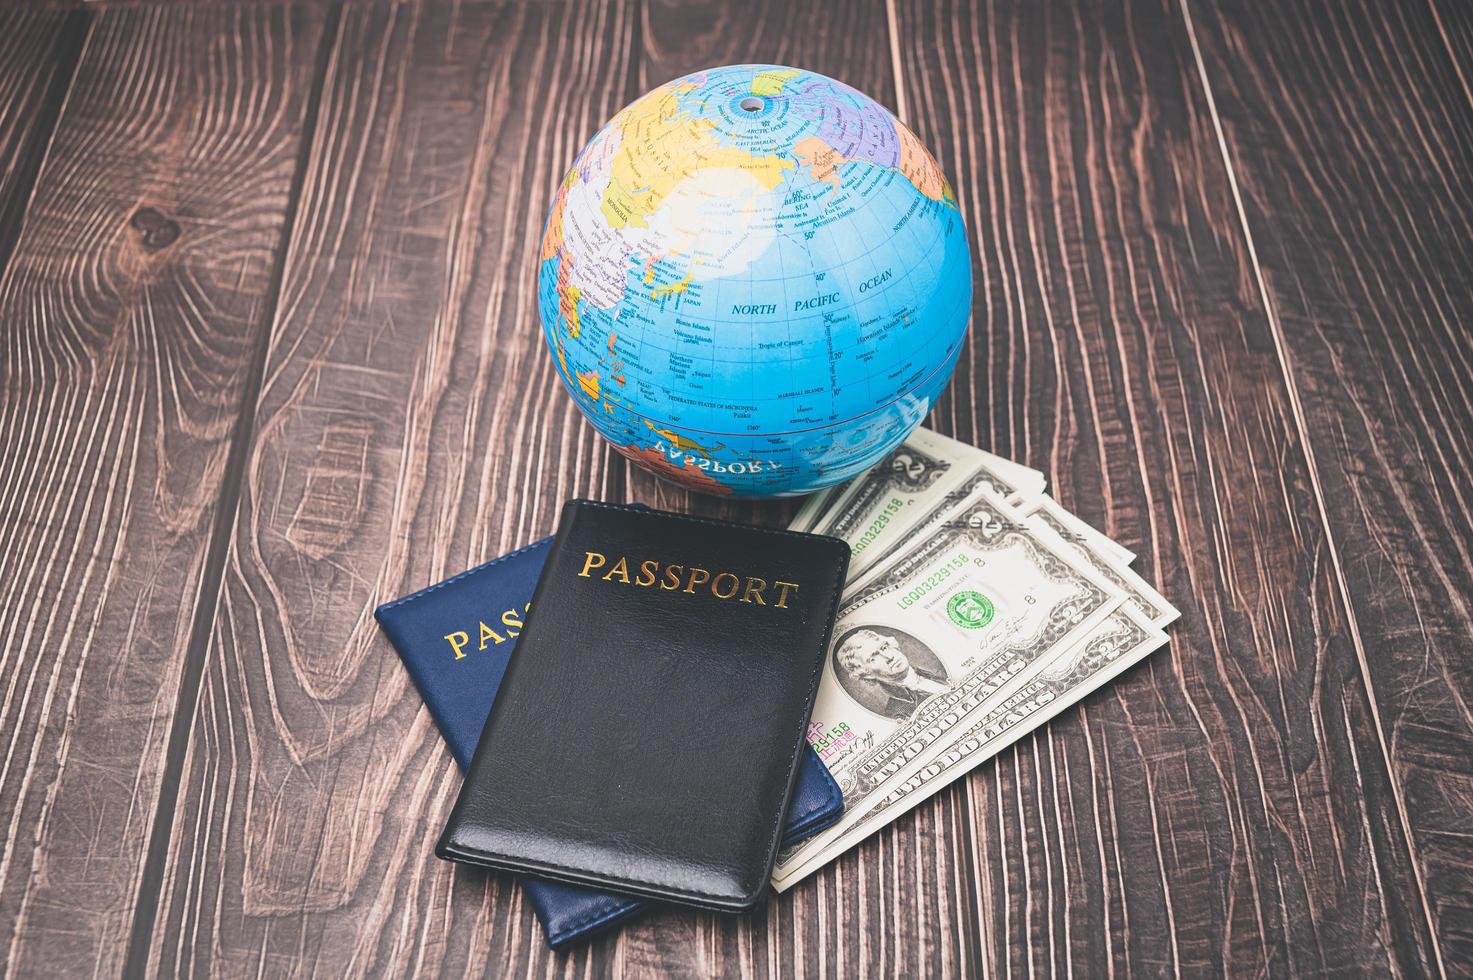 passeport économiser de l'argent pour voyager et faire des affaires dans le monde entier. photo